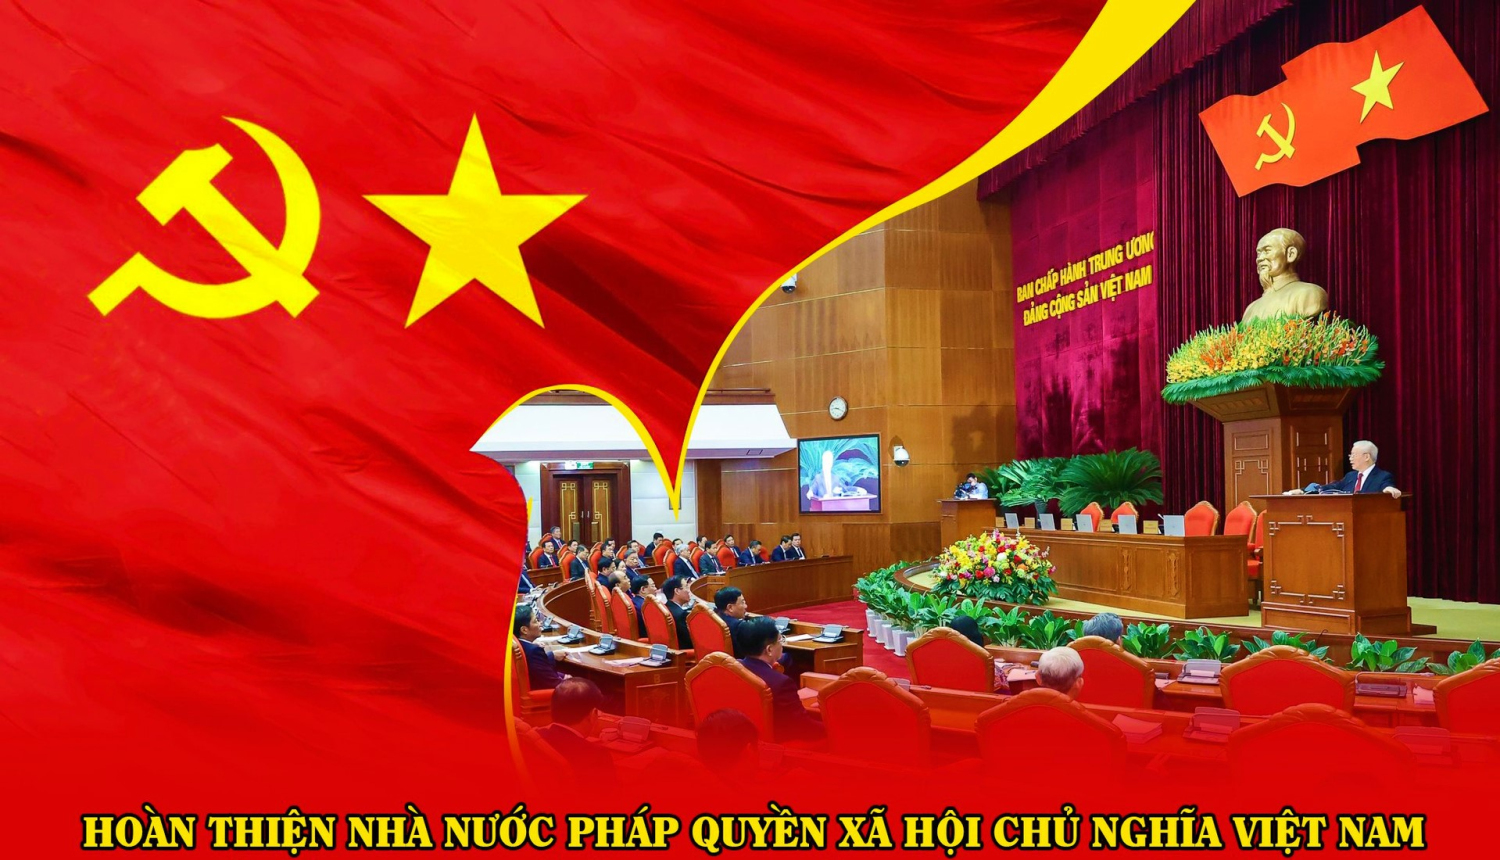 Đấu tranh, phản bác các quan điểm sai trái về Nhà nước pháp quyền XHCN Việt Nam